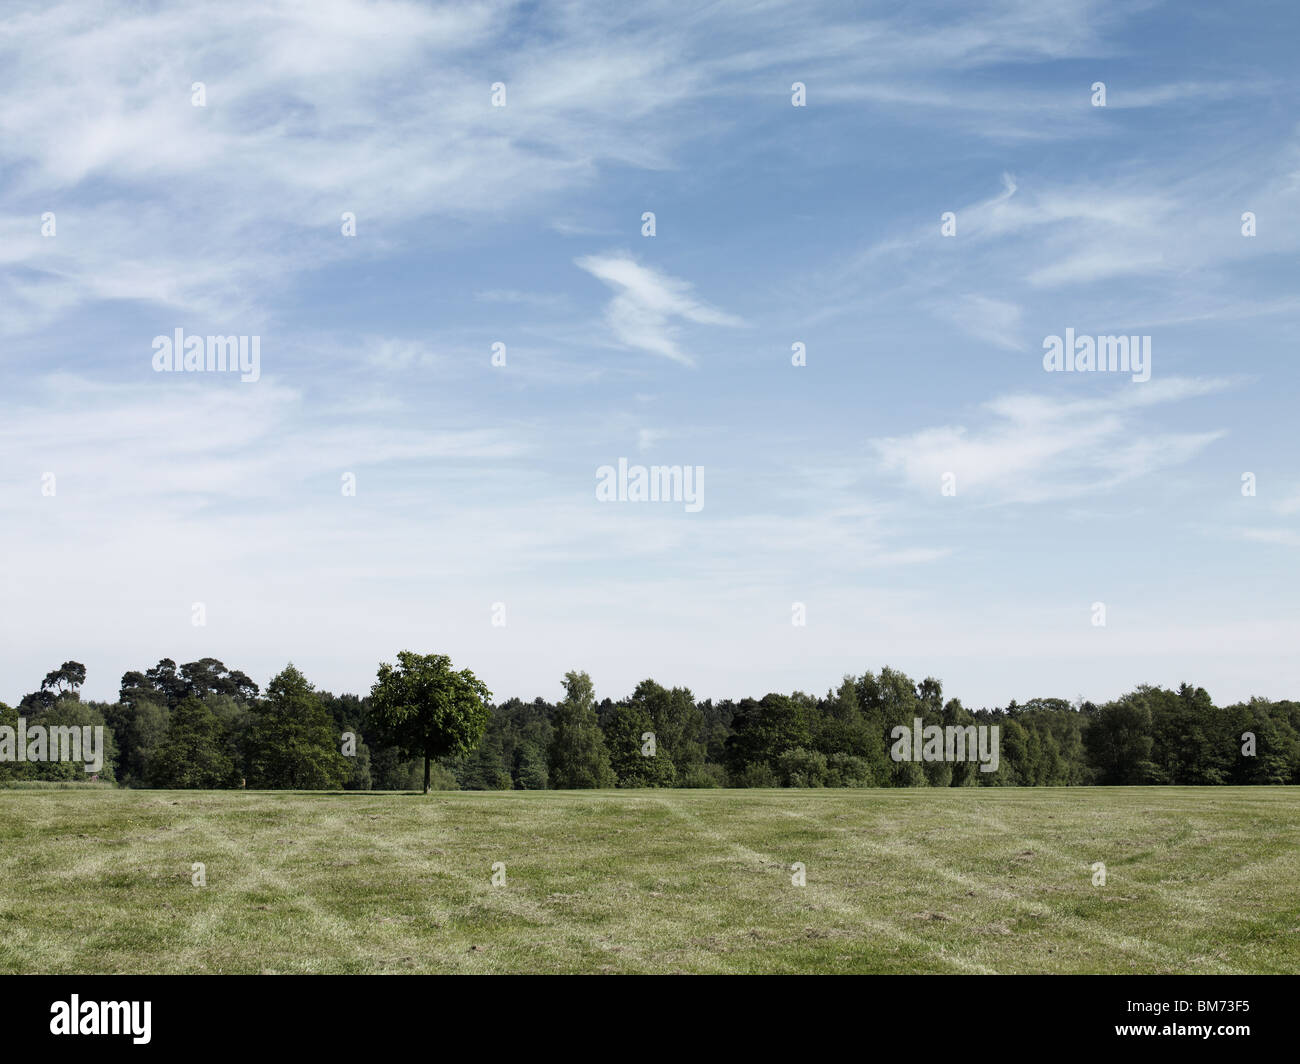 Landschaftsbild eines Parkplatzes in einem Feld zeigt Reifenspuren auf Rasen, Bäumen und einem Sommerhimmel an einem sonnigen Tag Stockfoto